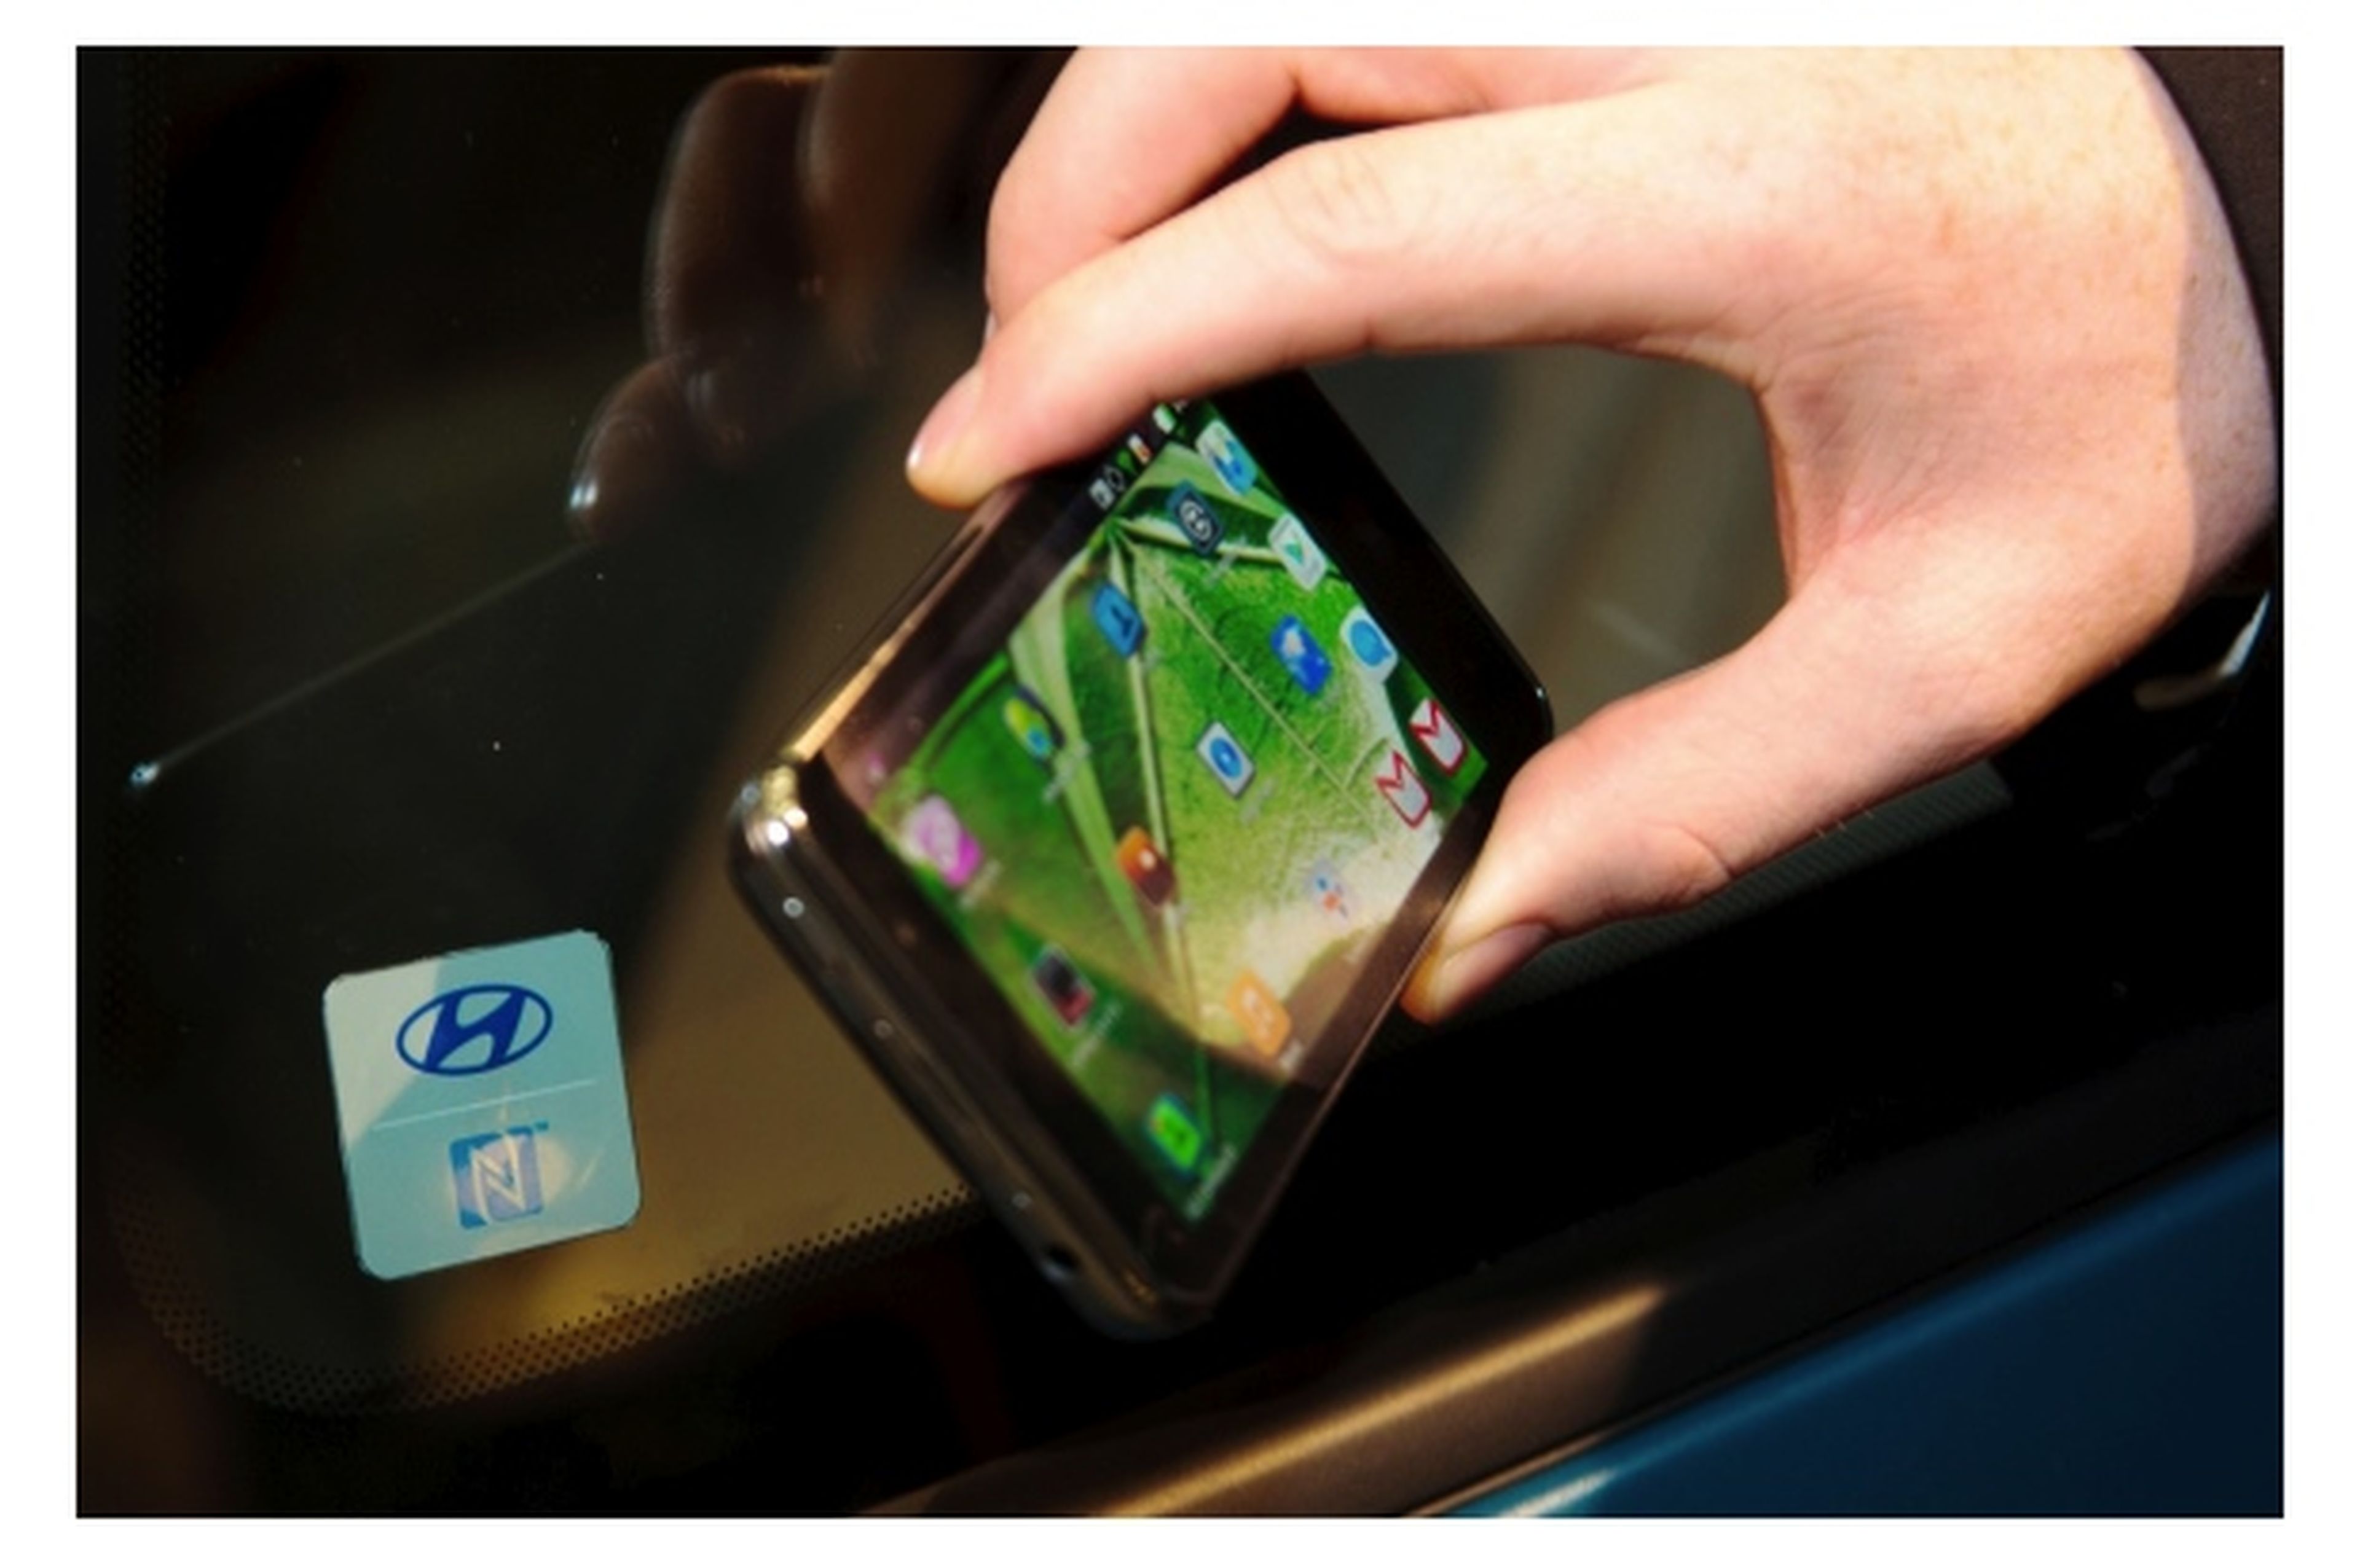 Hyundai ha presentado un sistema para controlar el acceso al coche con NFC